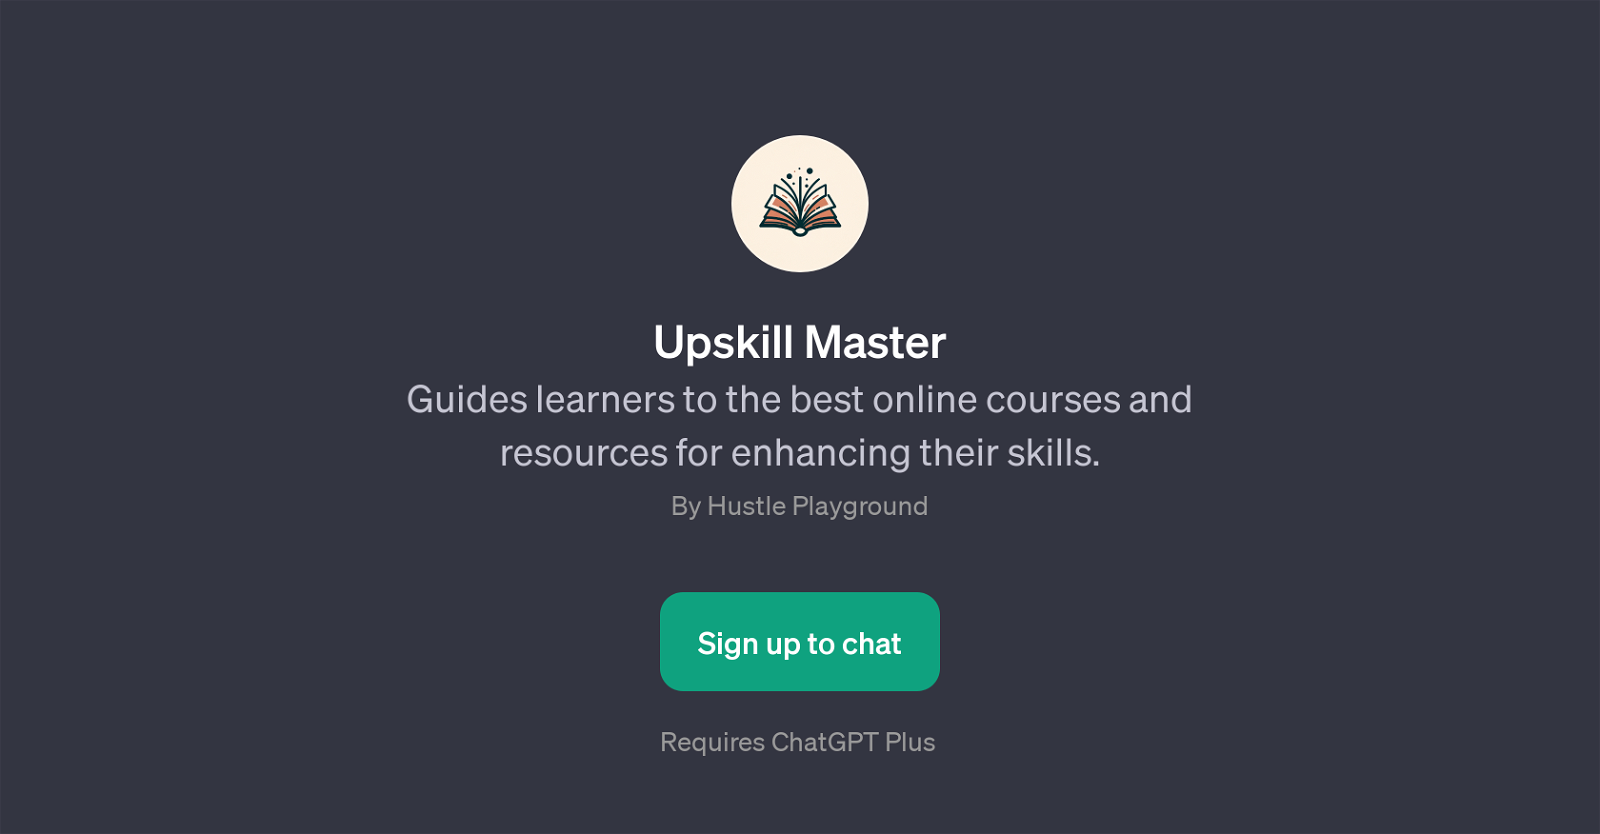 Upskill Master website